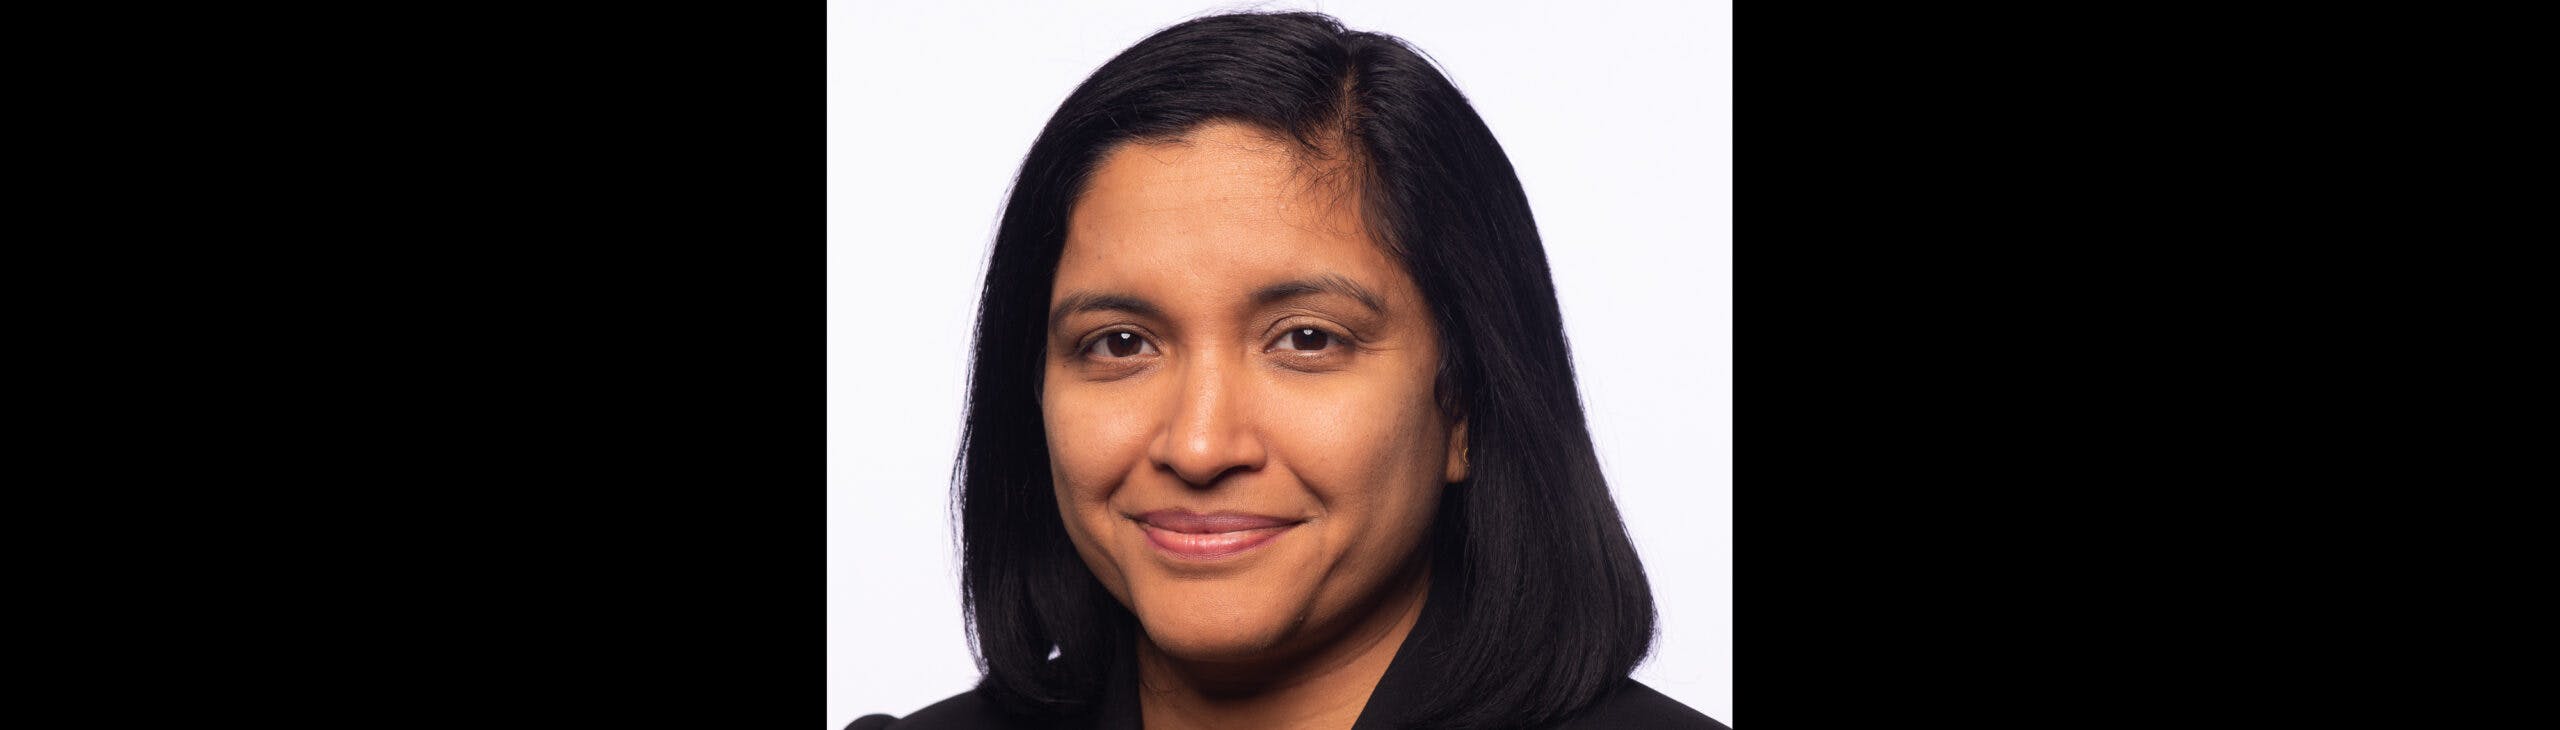 Sridevi Ravuri Named as Women Who Code’s Newest Advisor